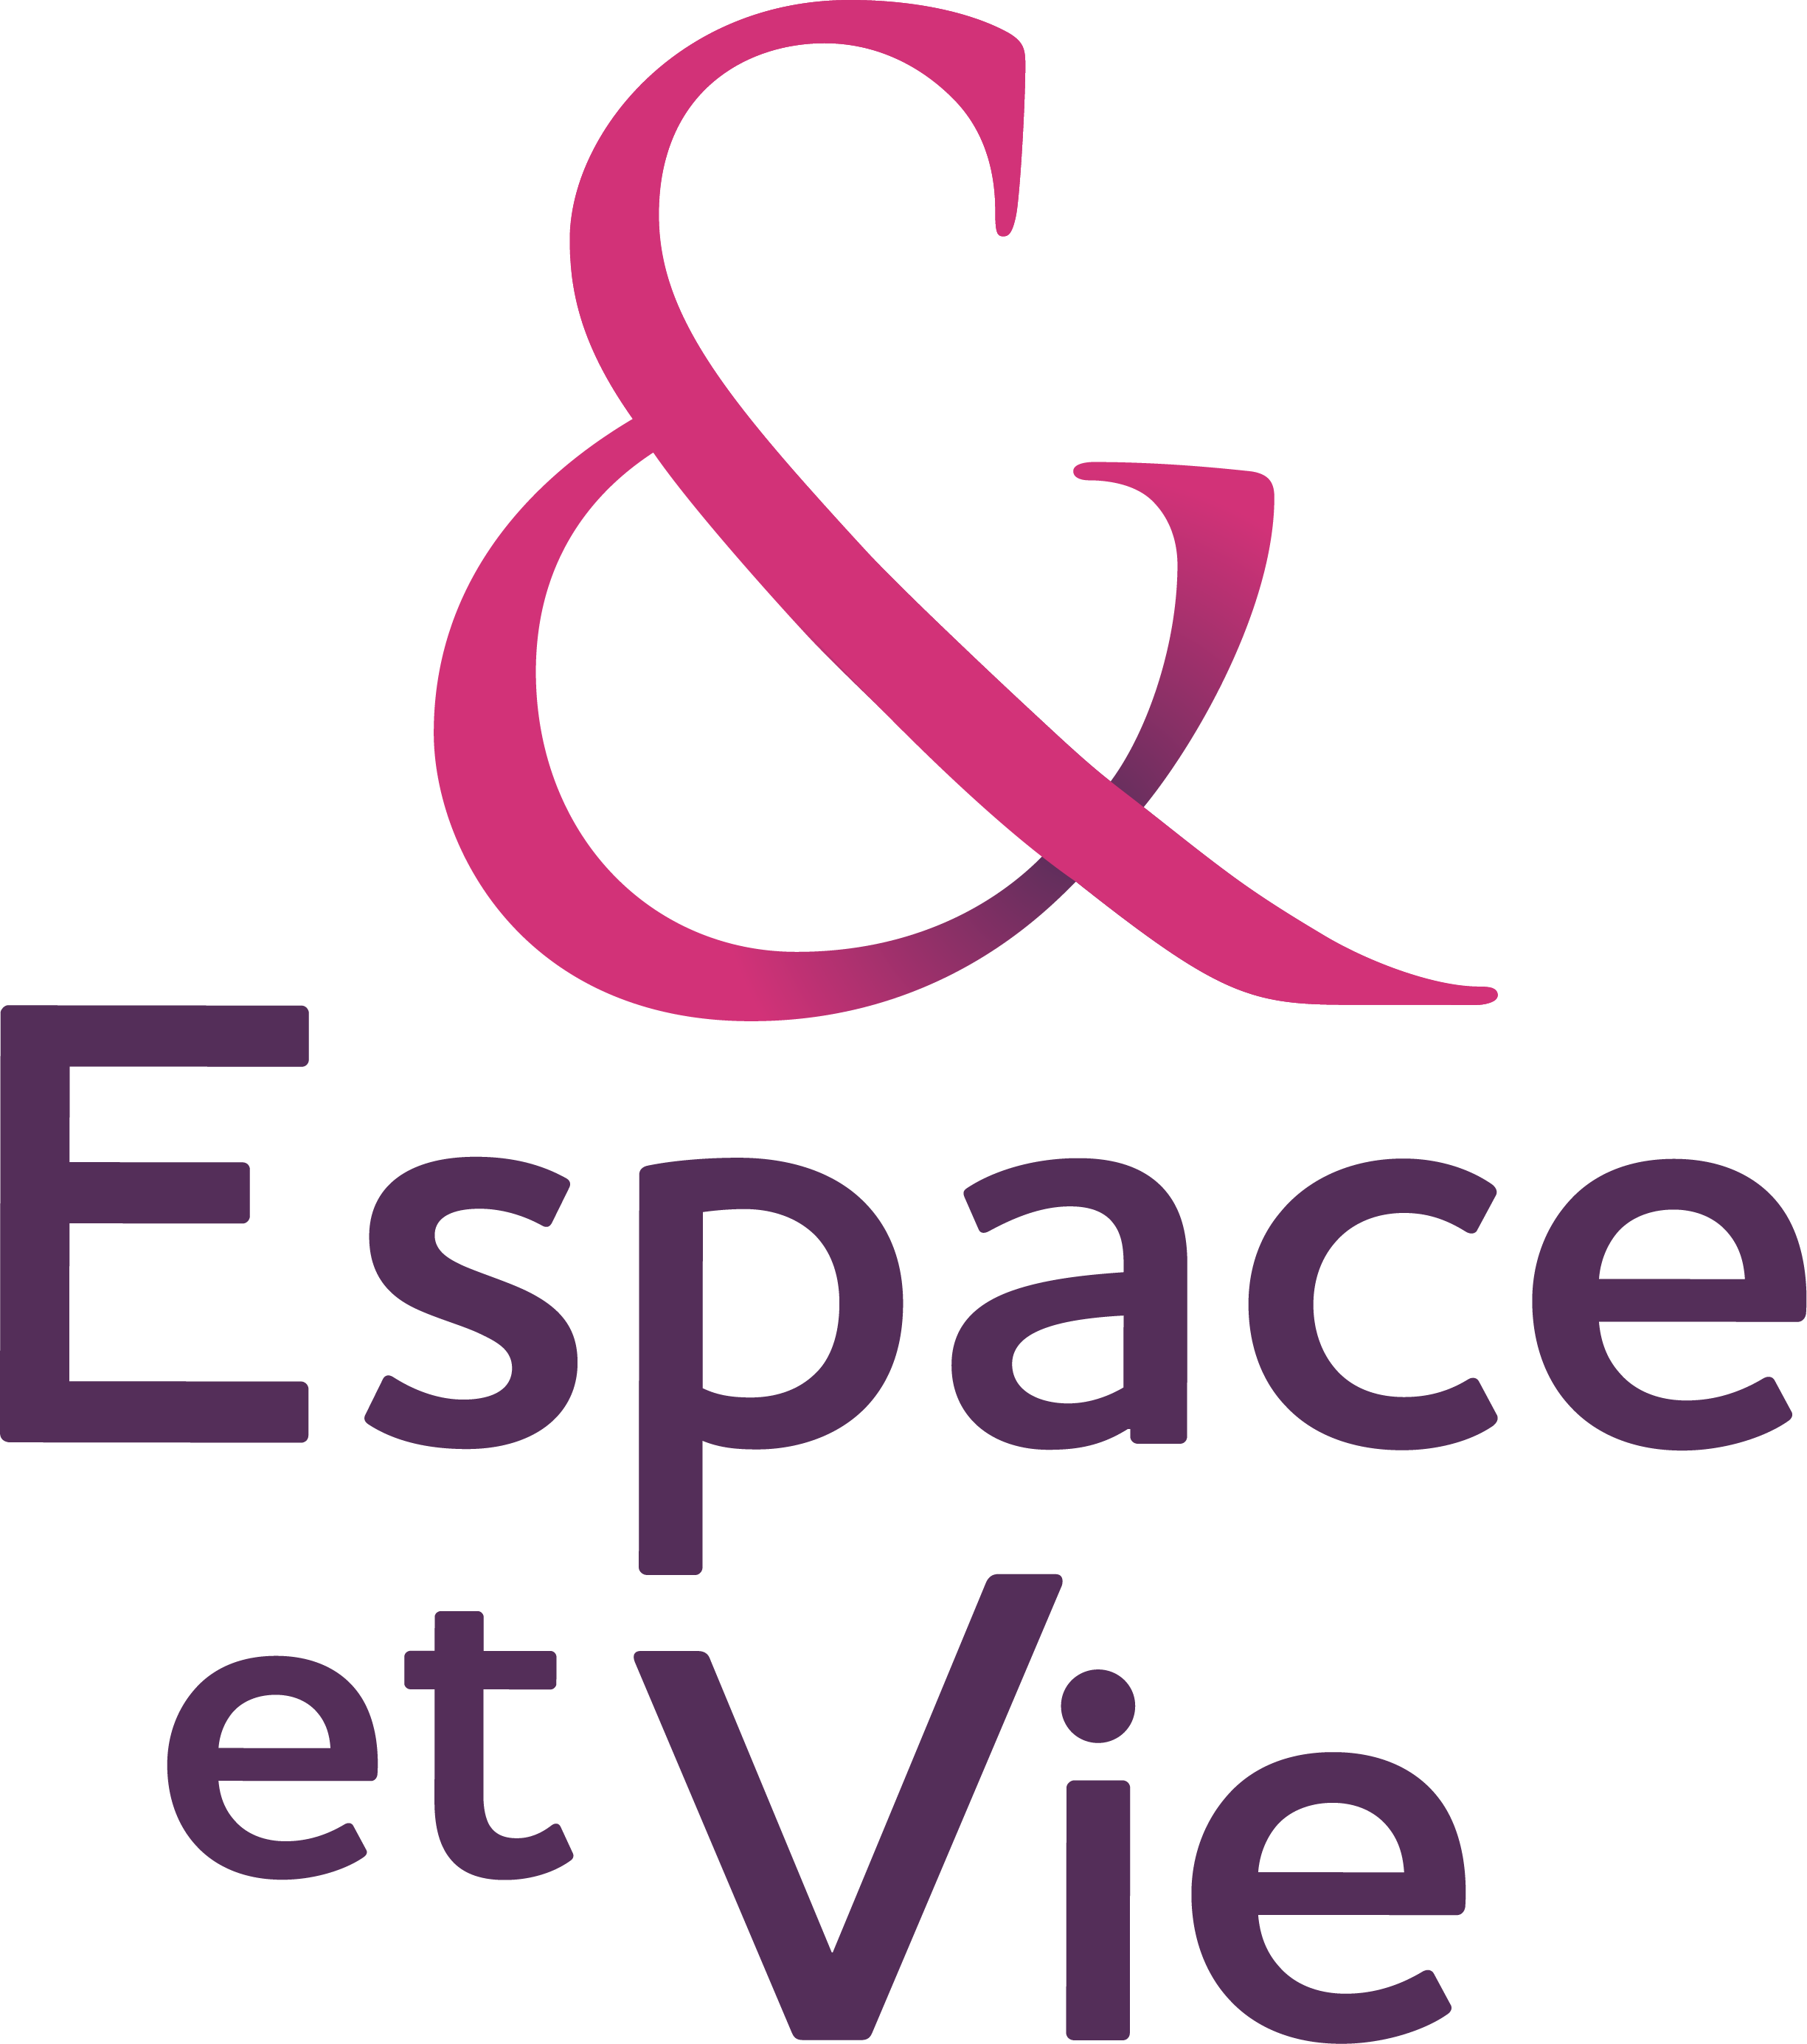 Logo Résidence Espace et Vie Libourne